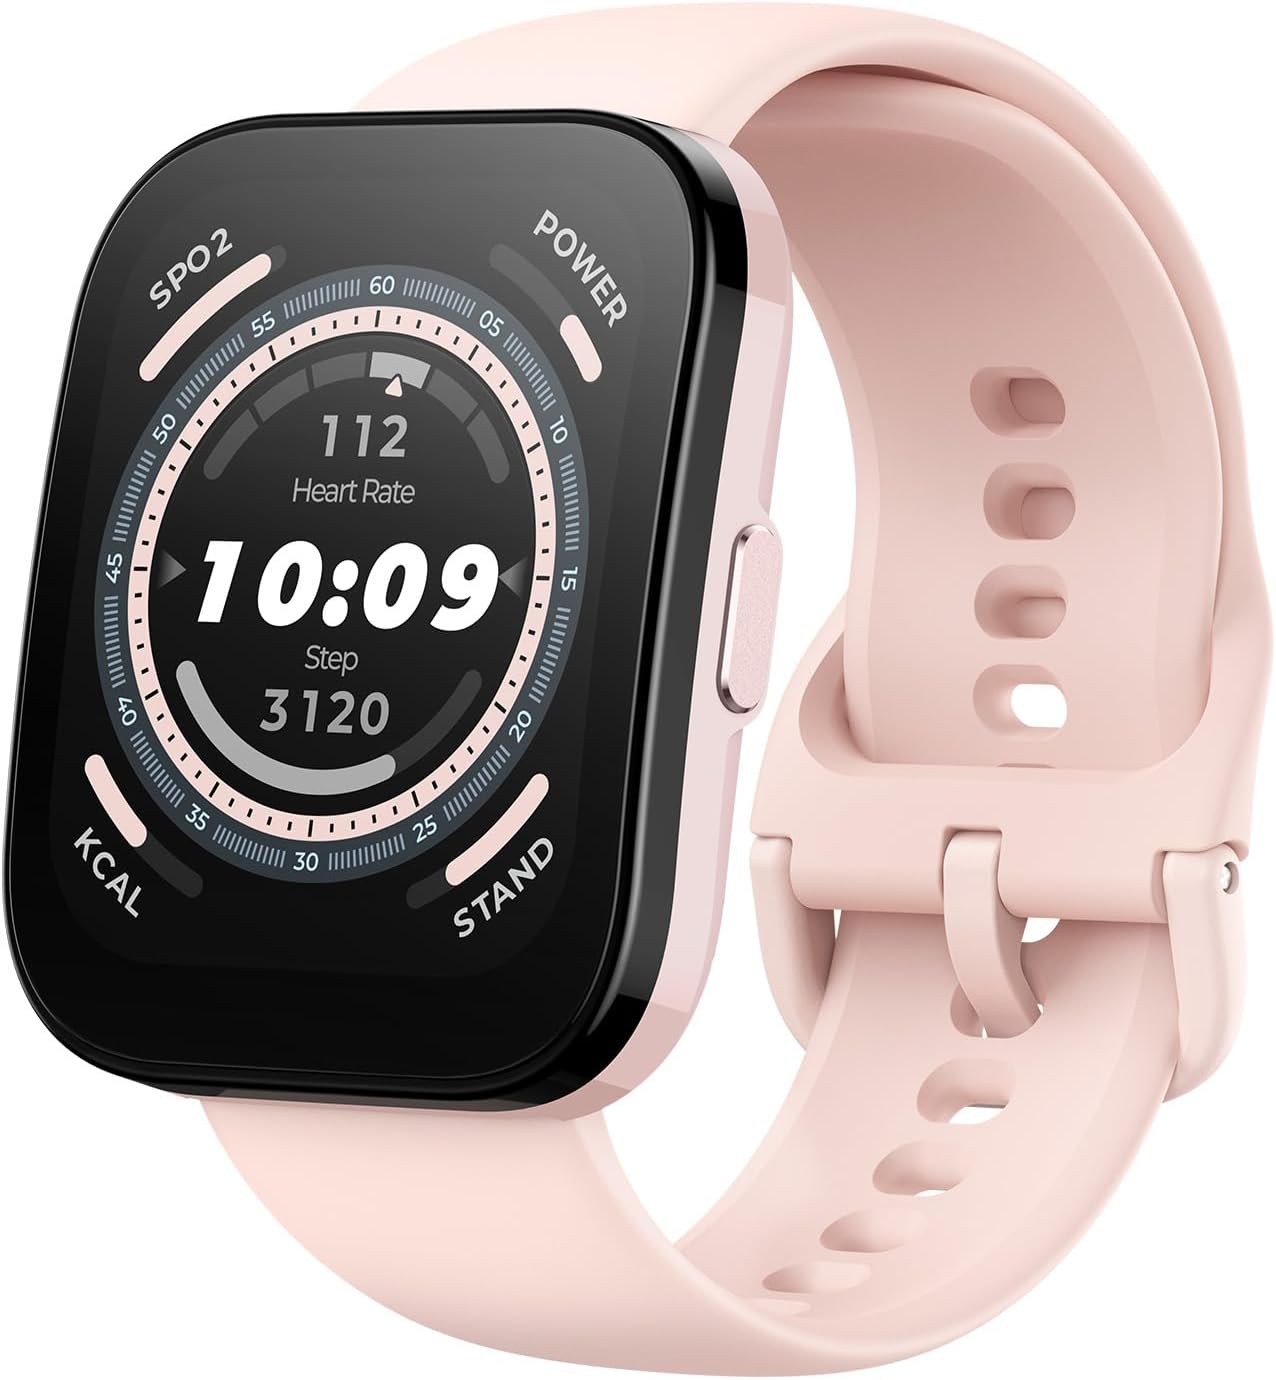 Amazfit Bip Xiaomi Smartwatch Cardiofrequenzimetro GPS da Ciclismo Activity  tracker Fitness Sport versione internazionale, Prezzi e Offerte